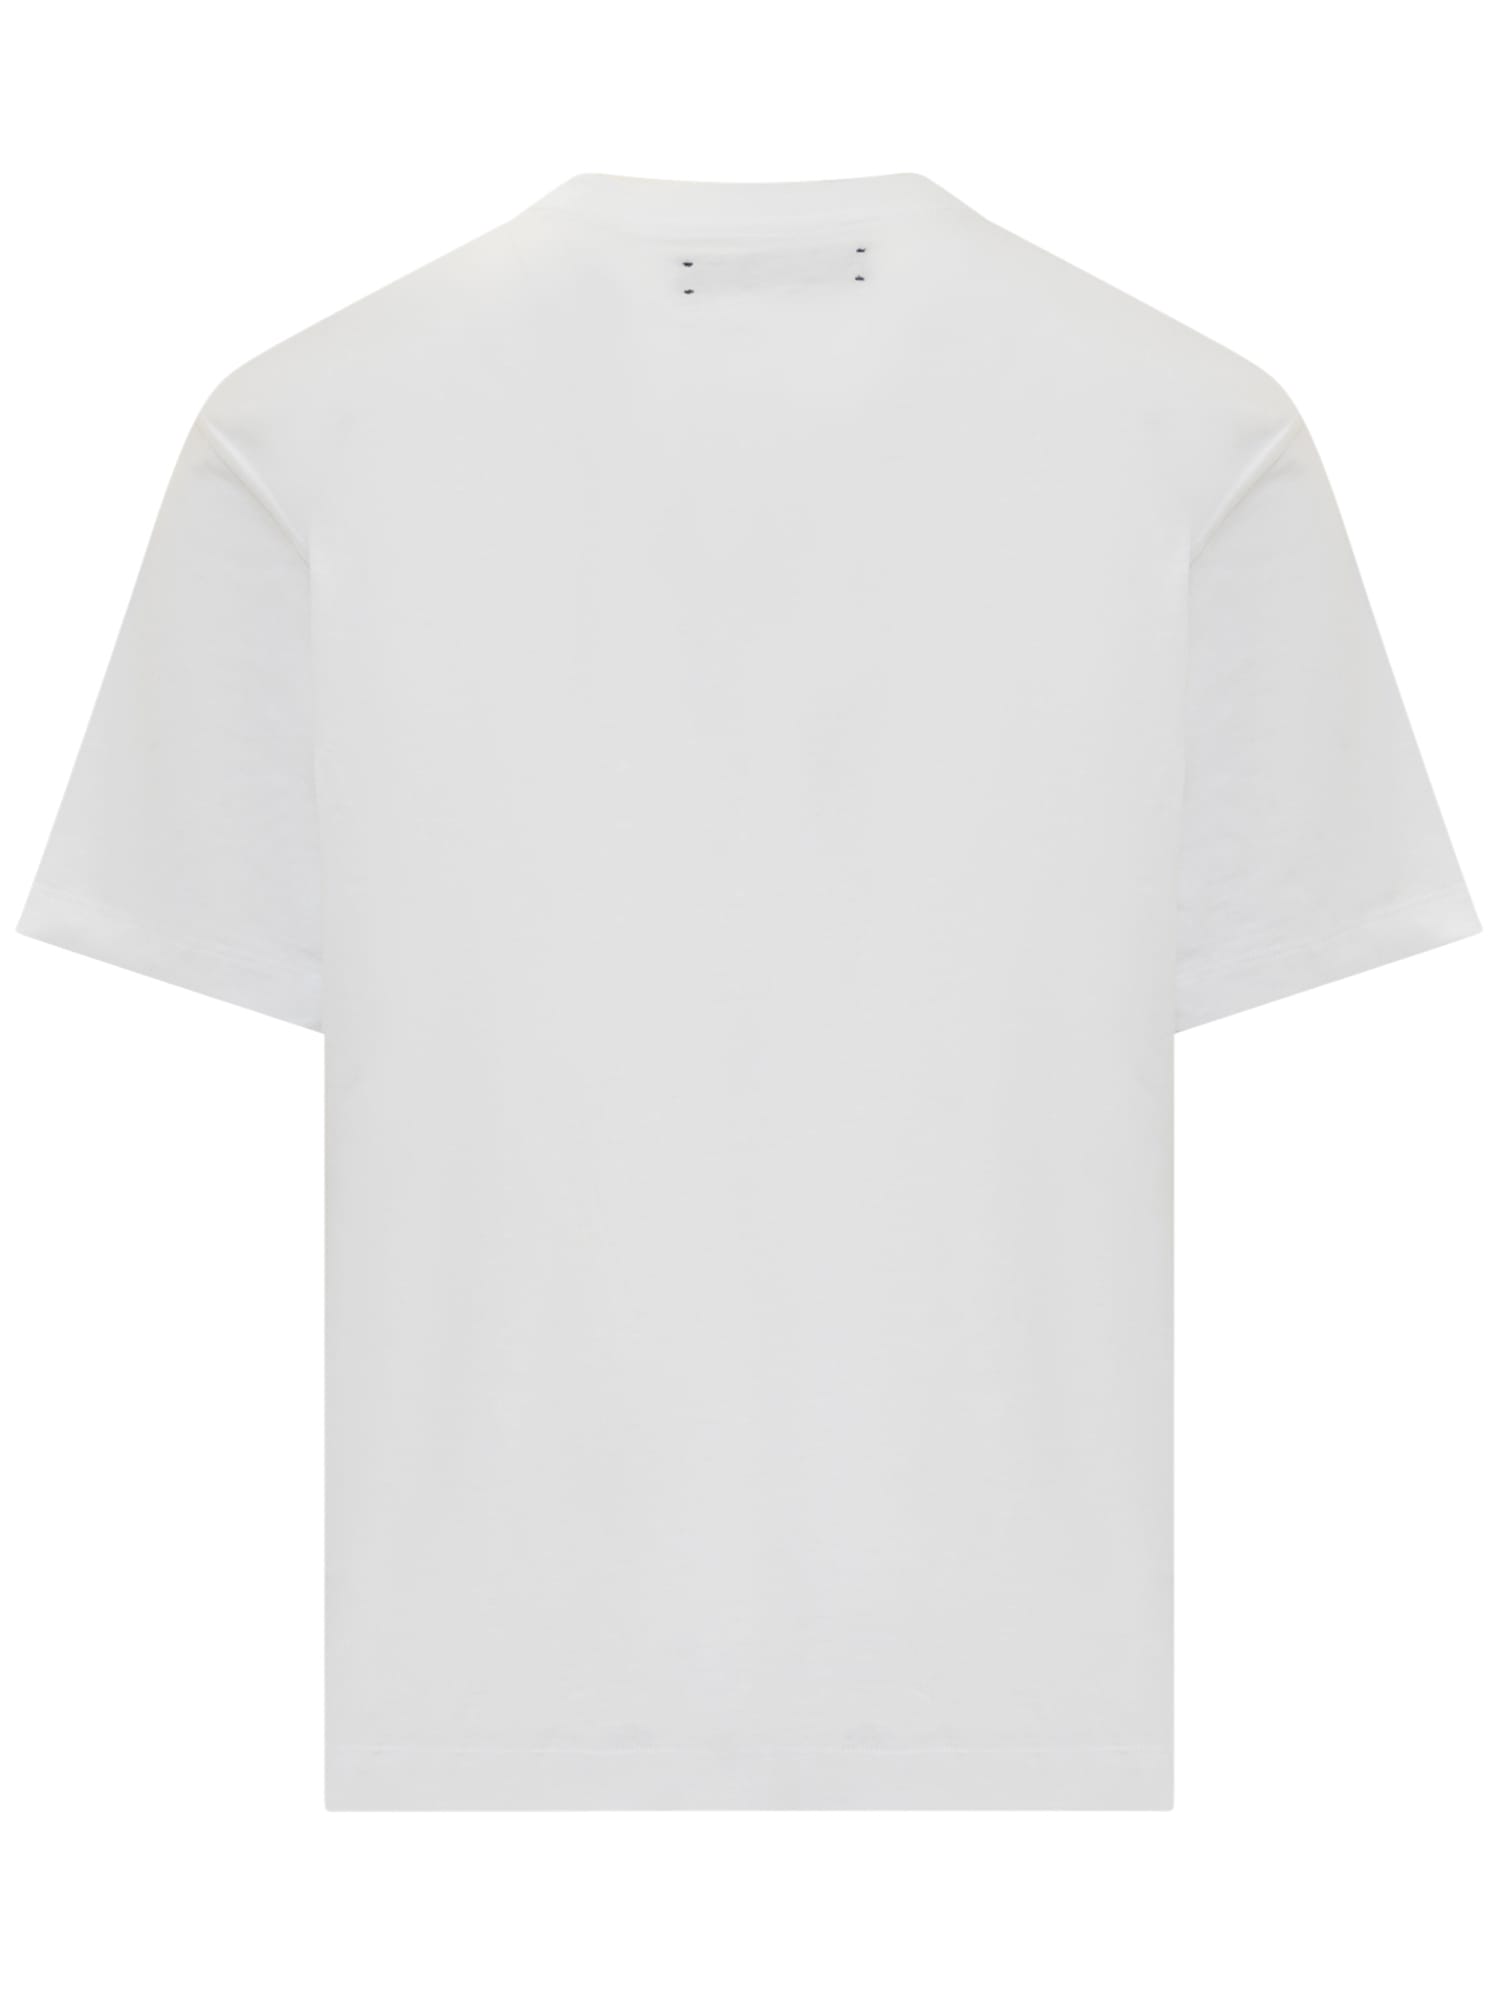 Shop Amiri Ma Bar Logo T-shirt In White